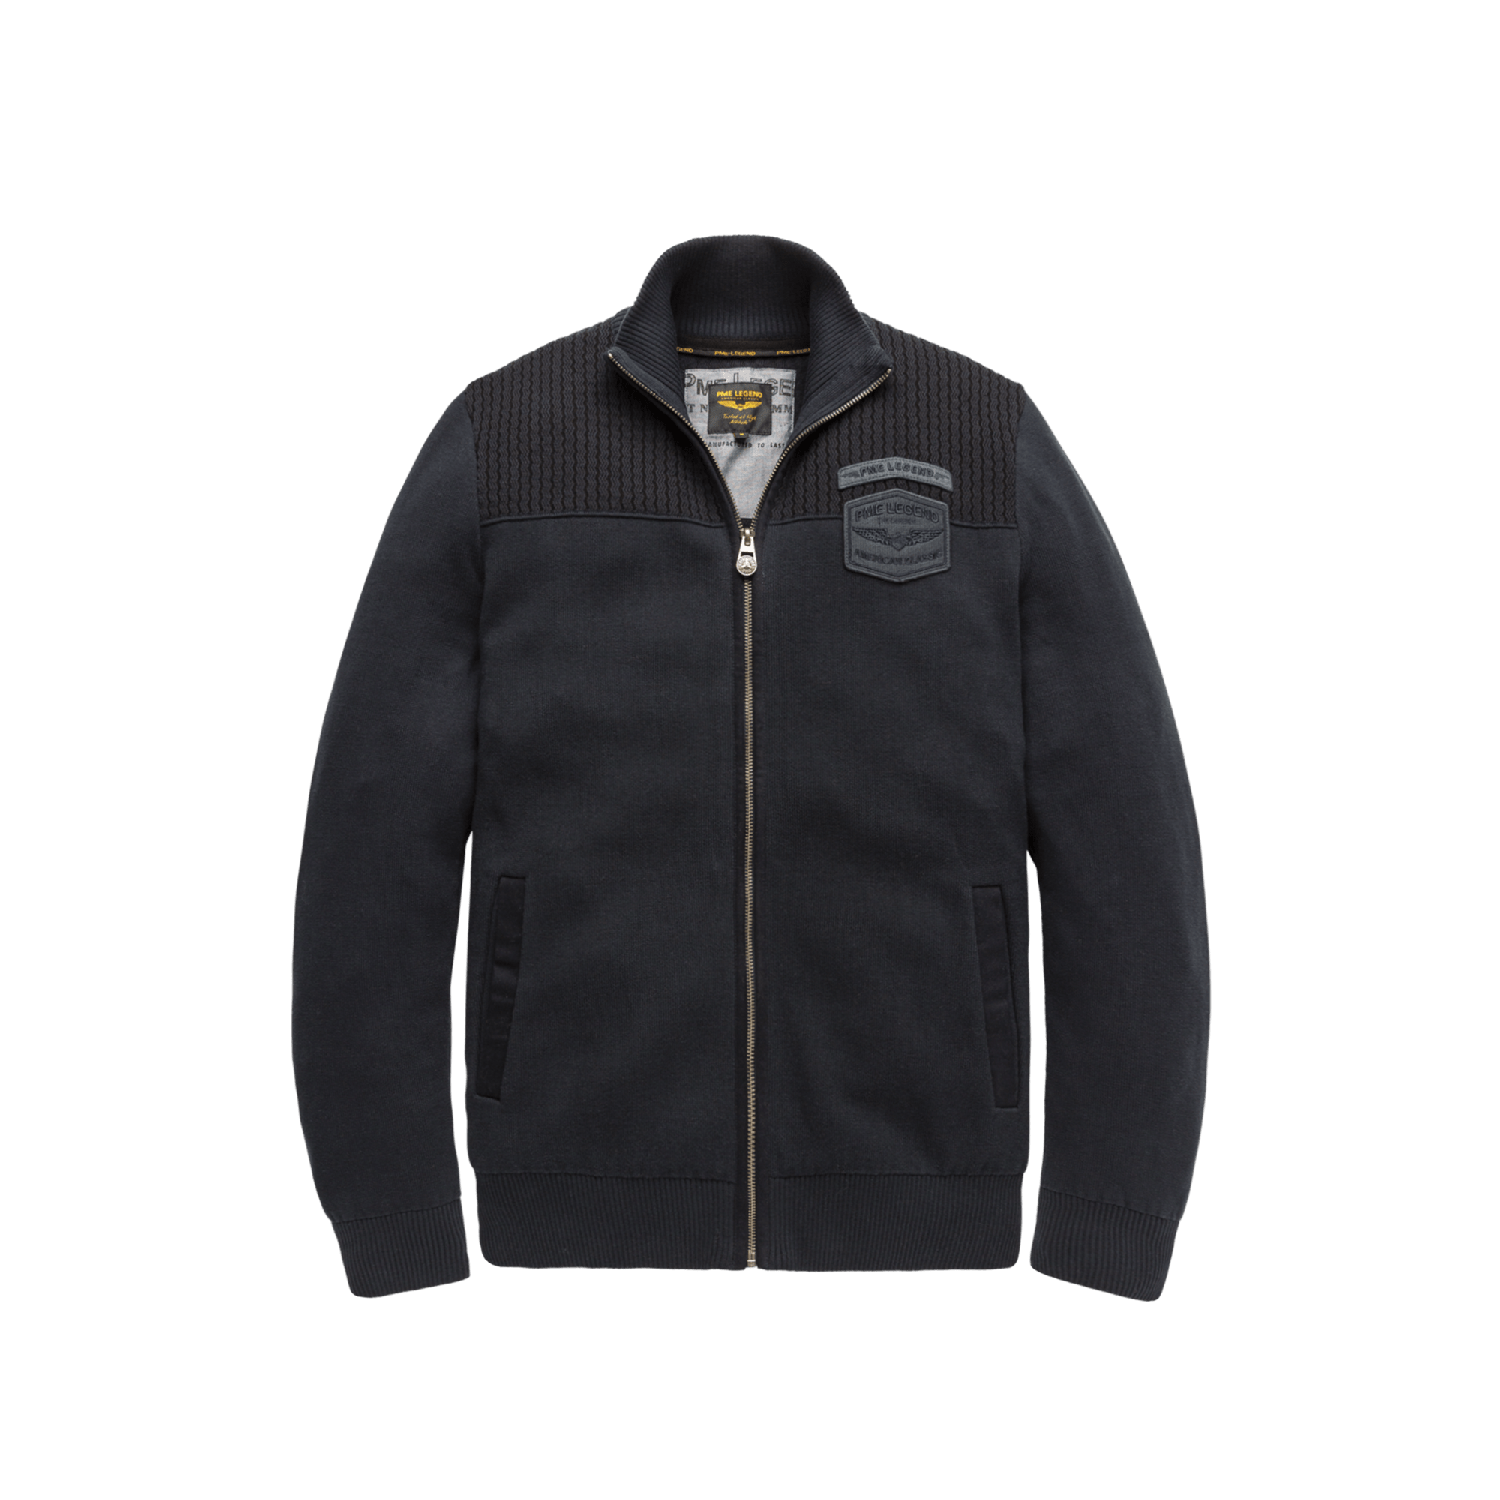 PME Legend zip jacket cotton double knit salute